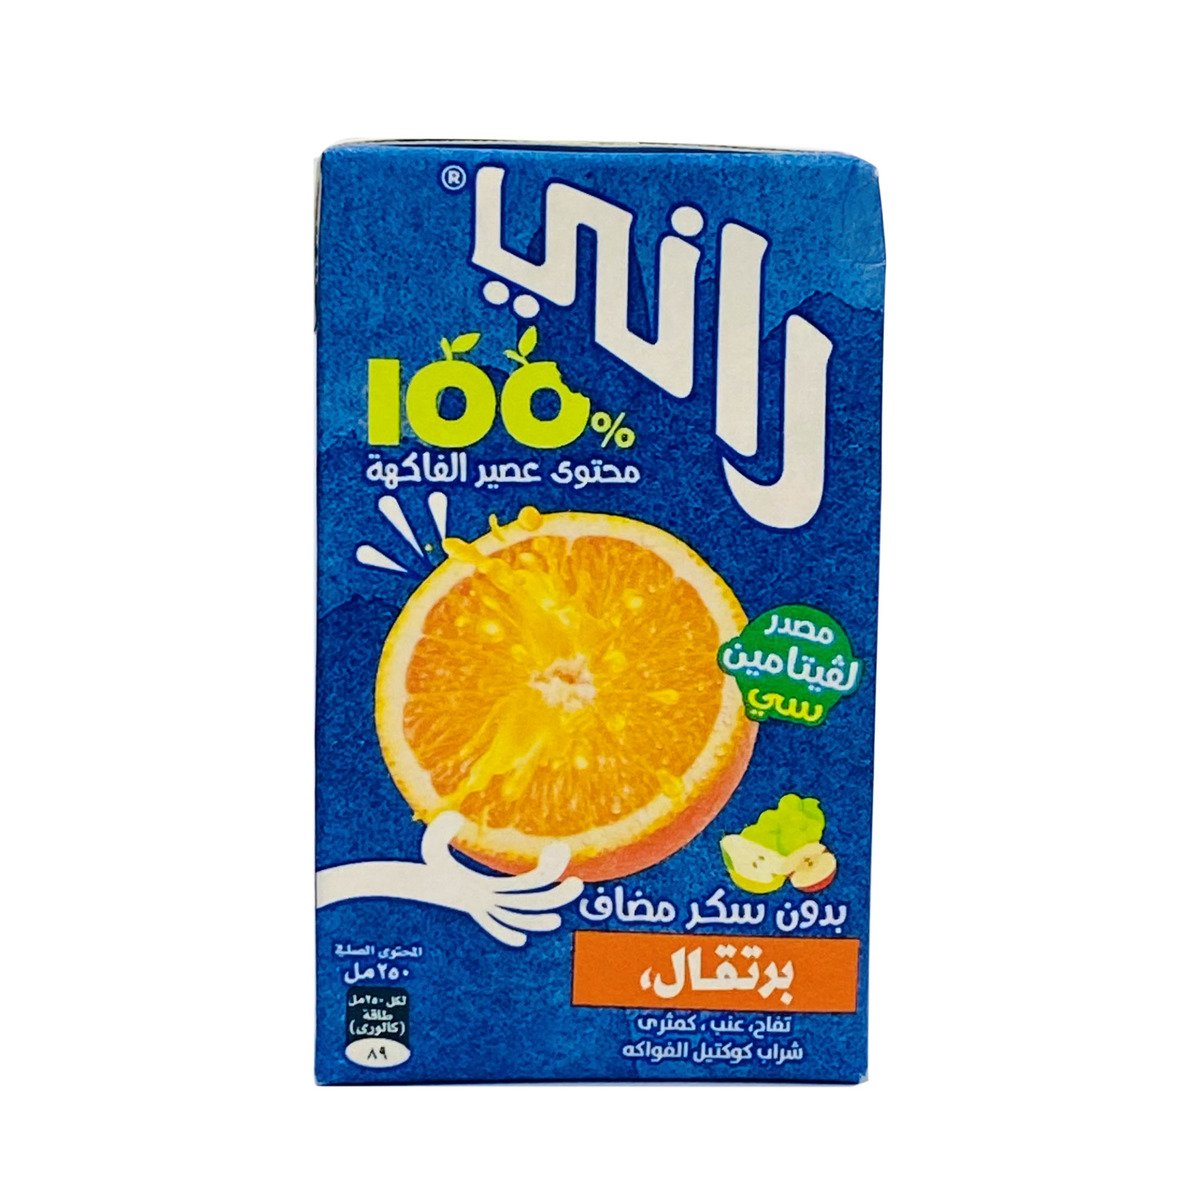 Rani Juice Orange 9 x 250 ml